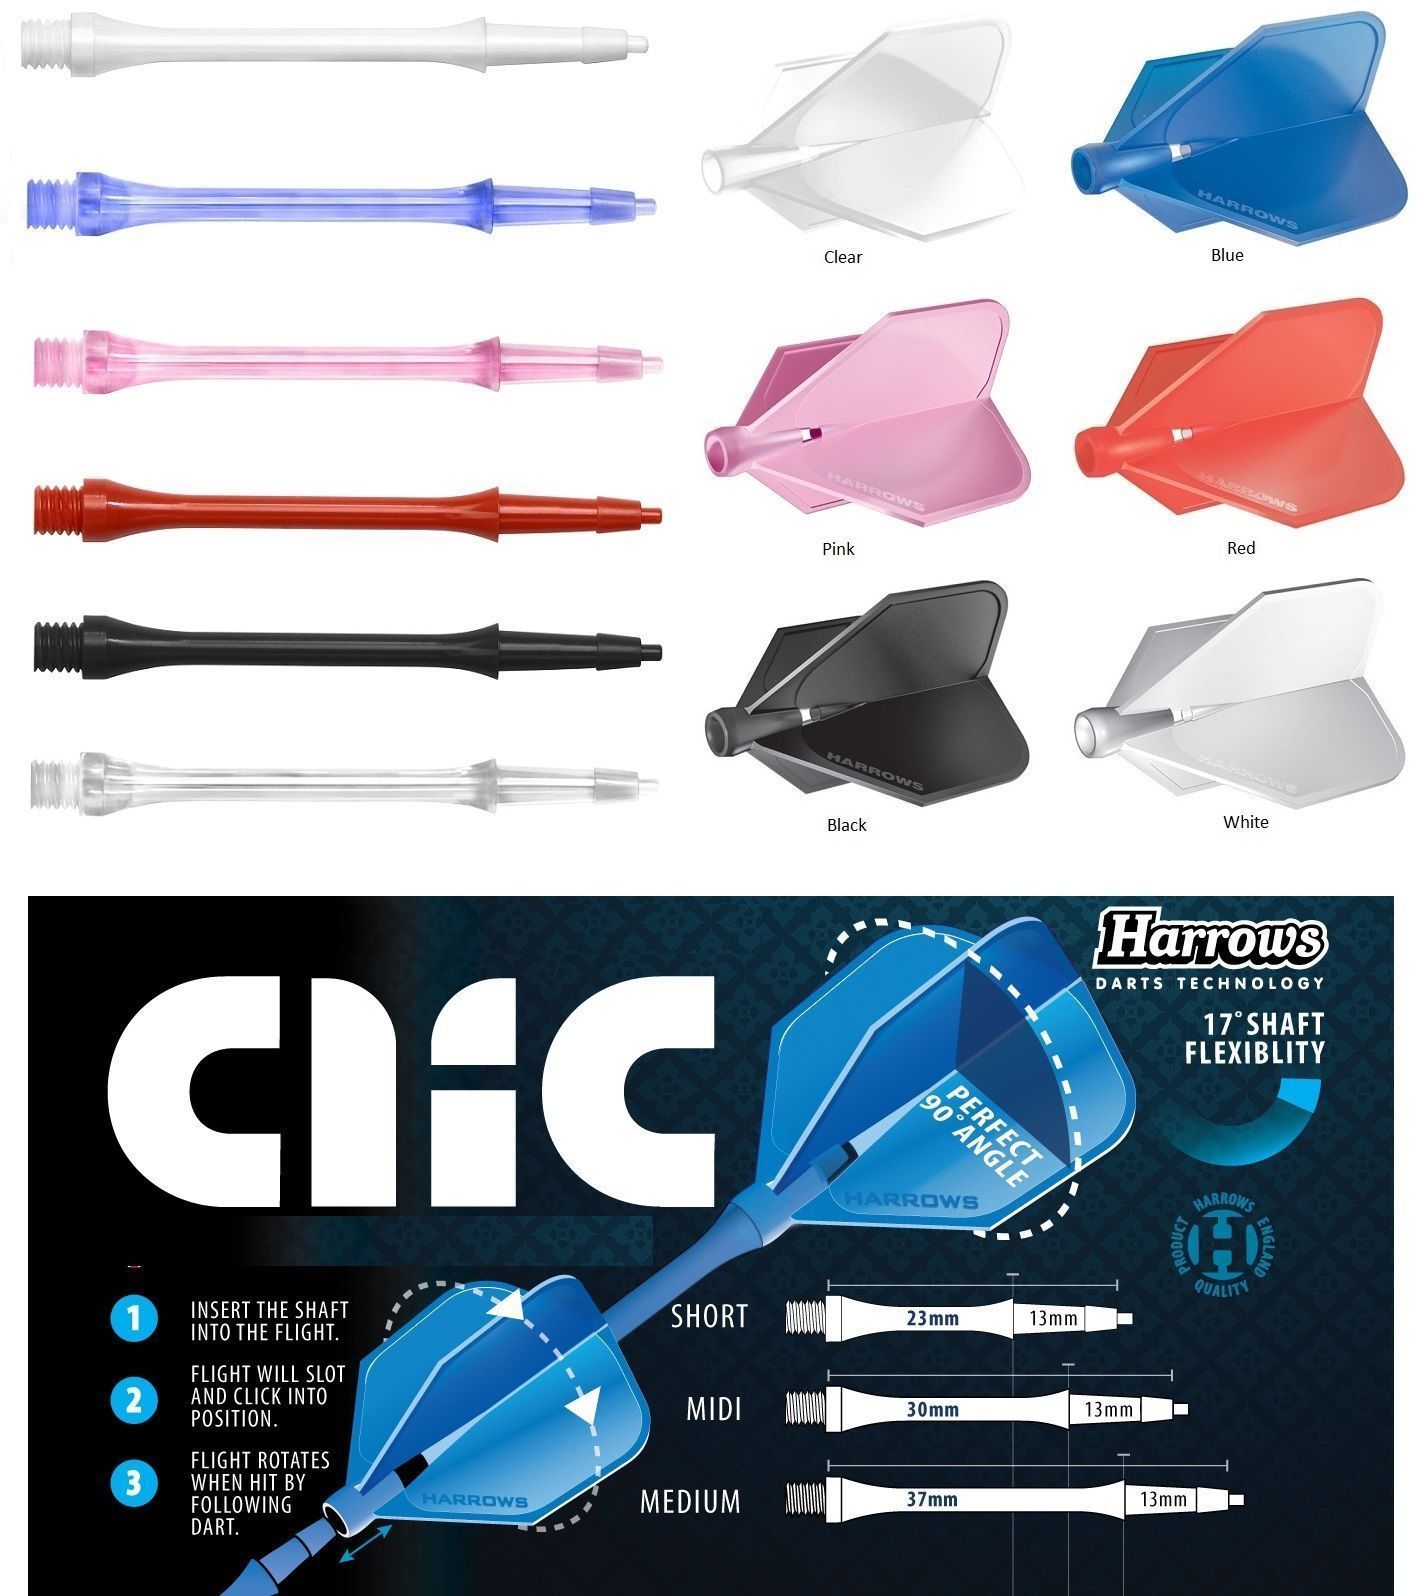 Harrows CLIC System set of 3 Dart Shafts Stems - 23 mm - Short - Blue - $8.75